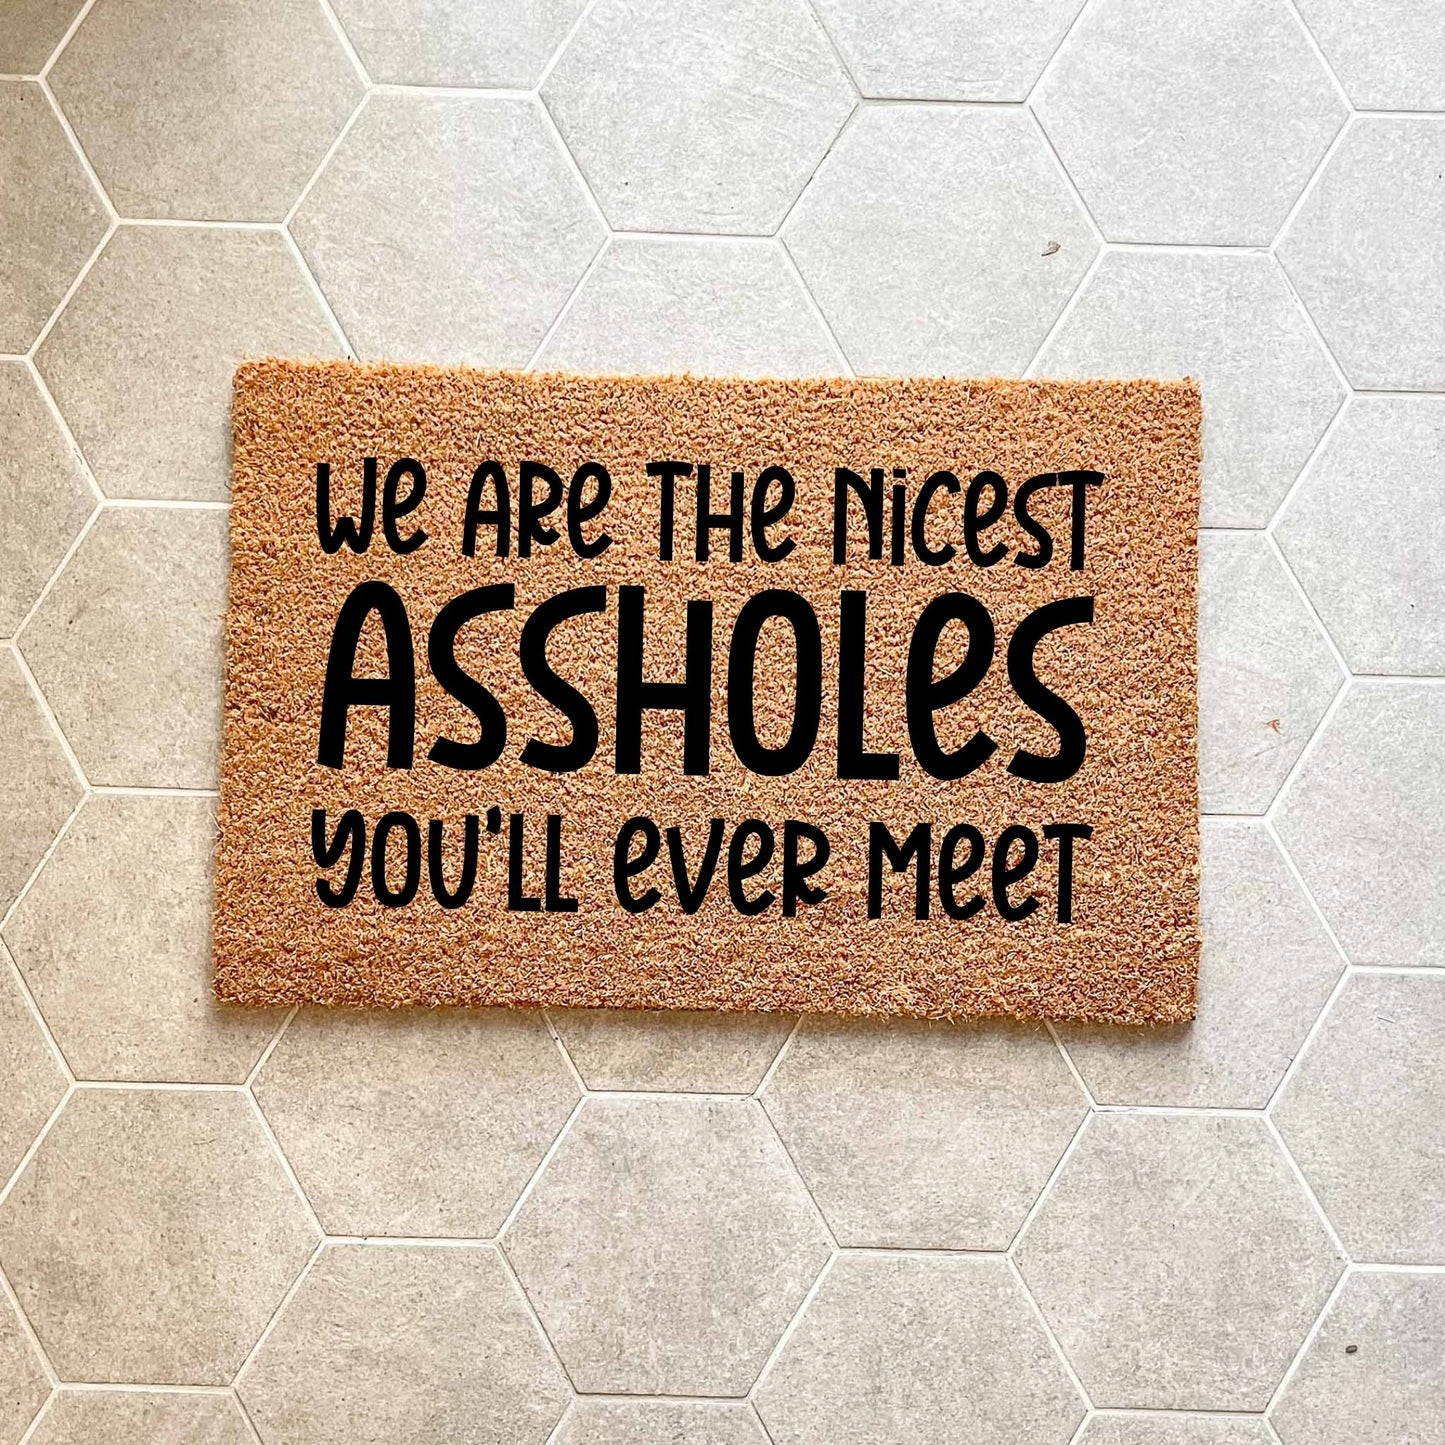 We're the nicest assholes doormat, unique doormat, custom doormat, personalised doormat